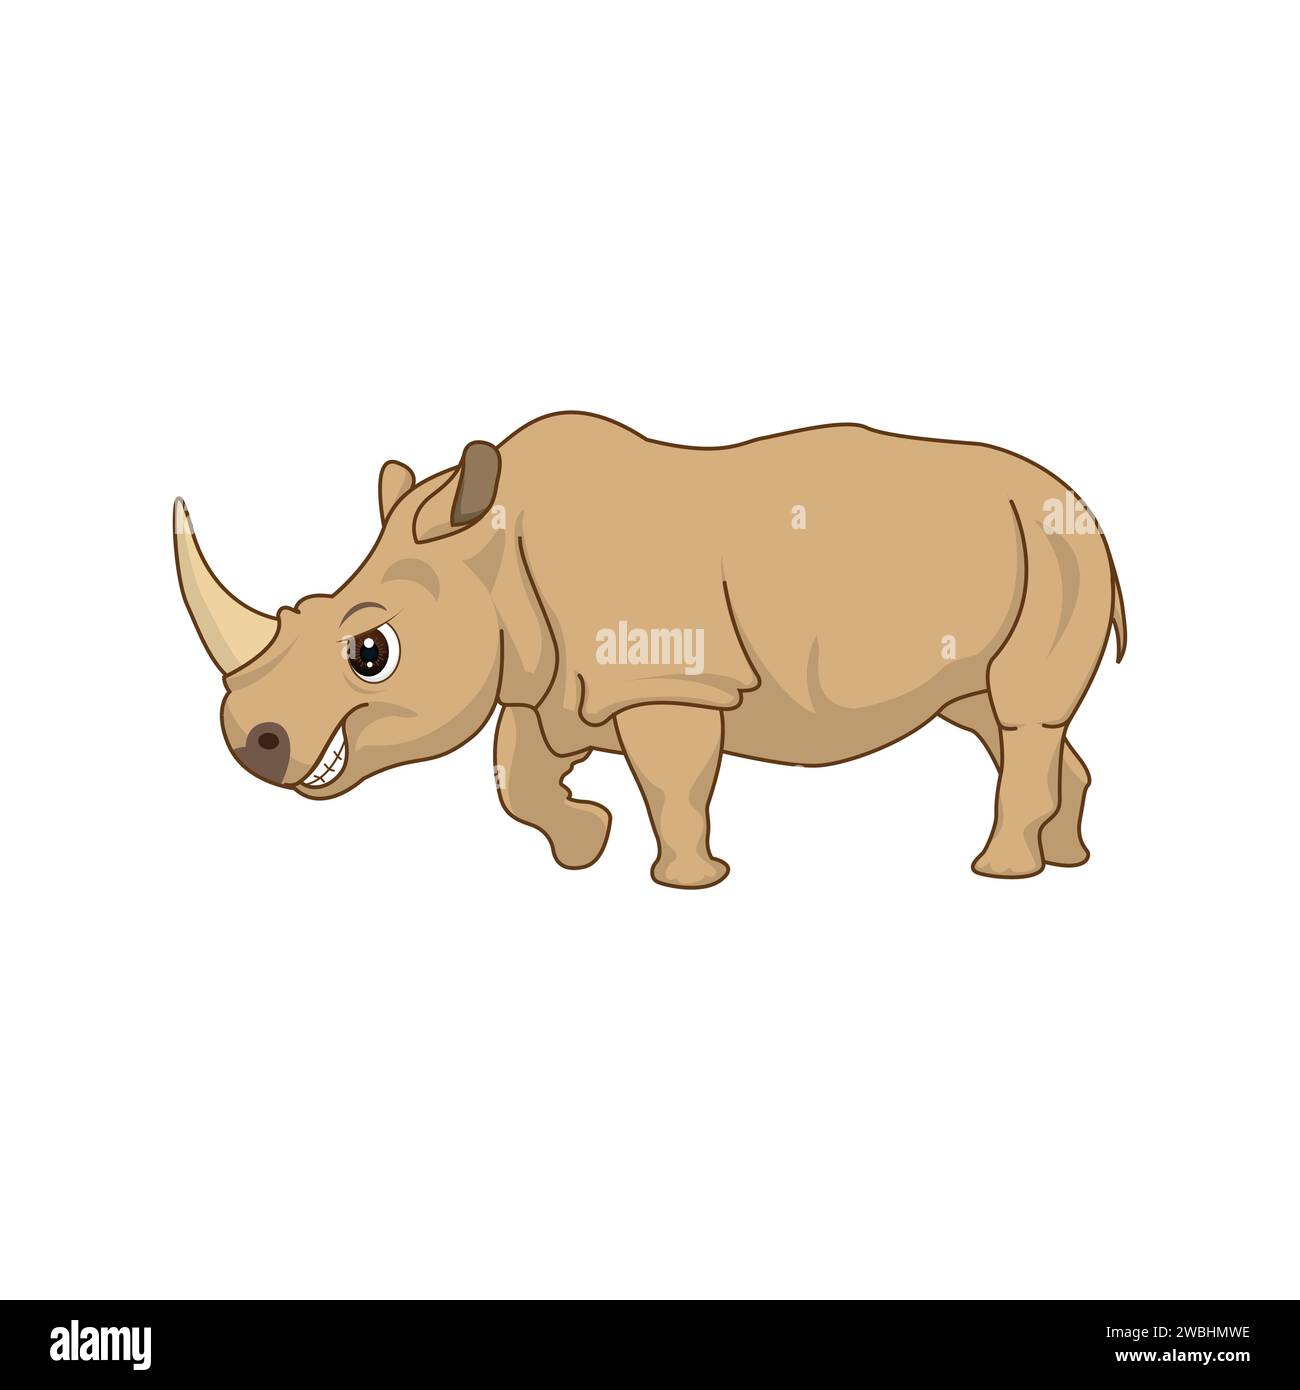 Simpatico rinoceronte in stile cartone animato isolato. Illustrazione vettoriale su sfondo bianco della mascotte Rhino Illustrazione Vettoriale